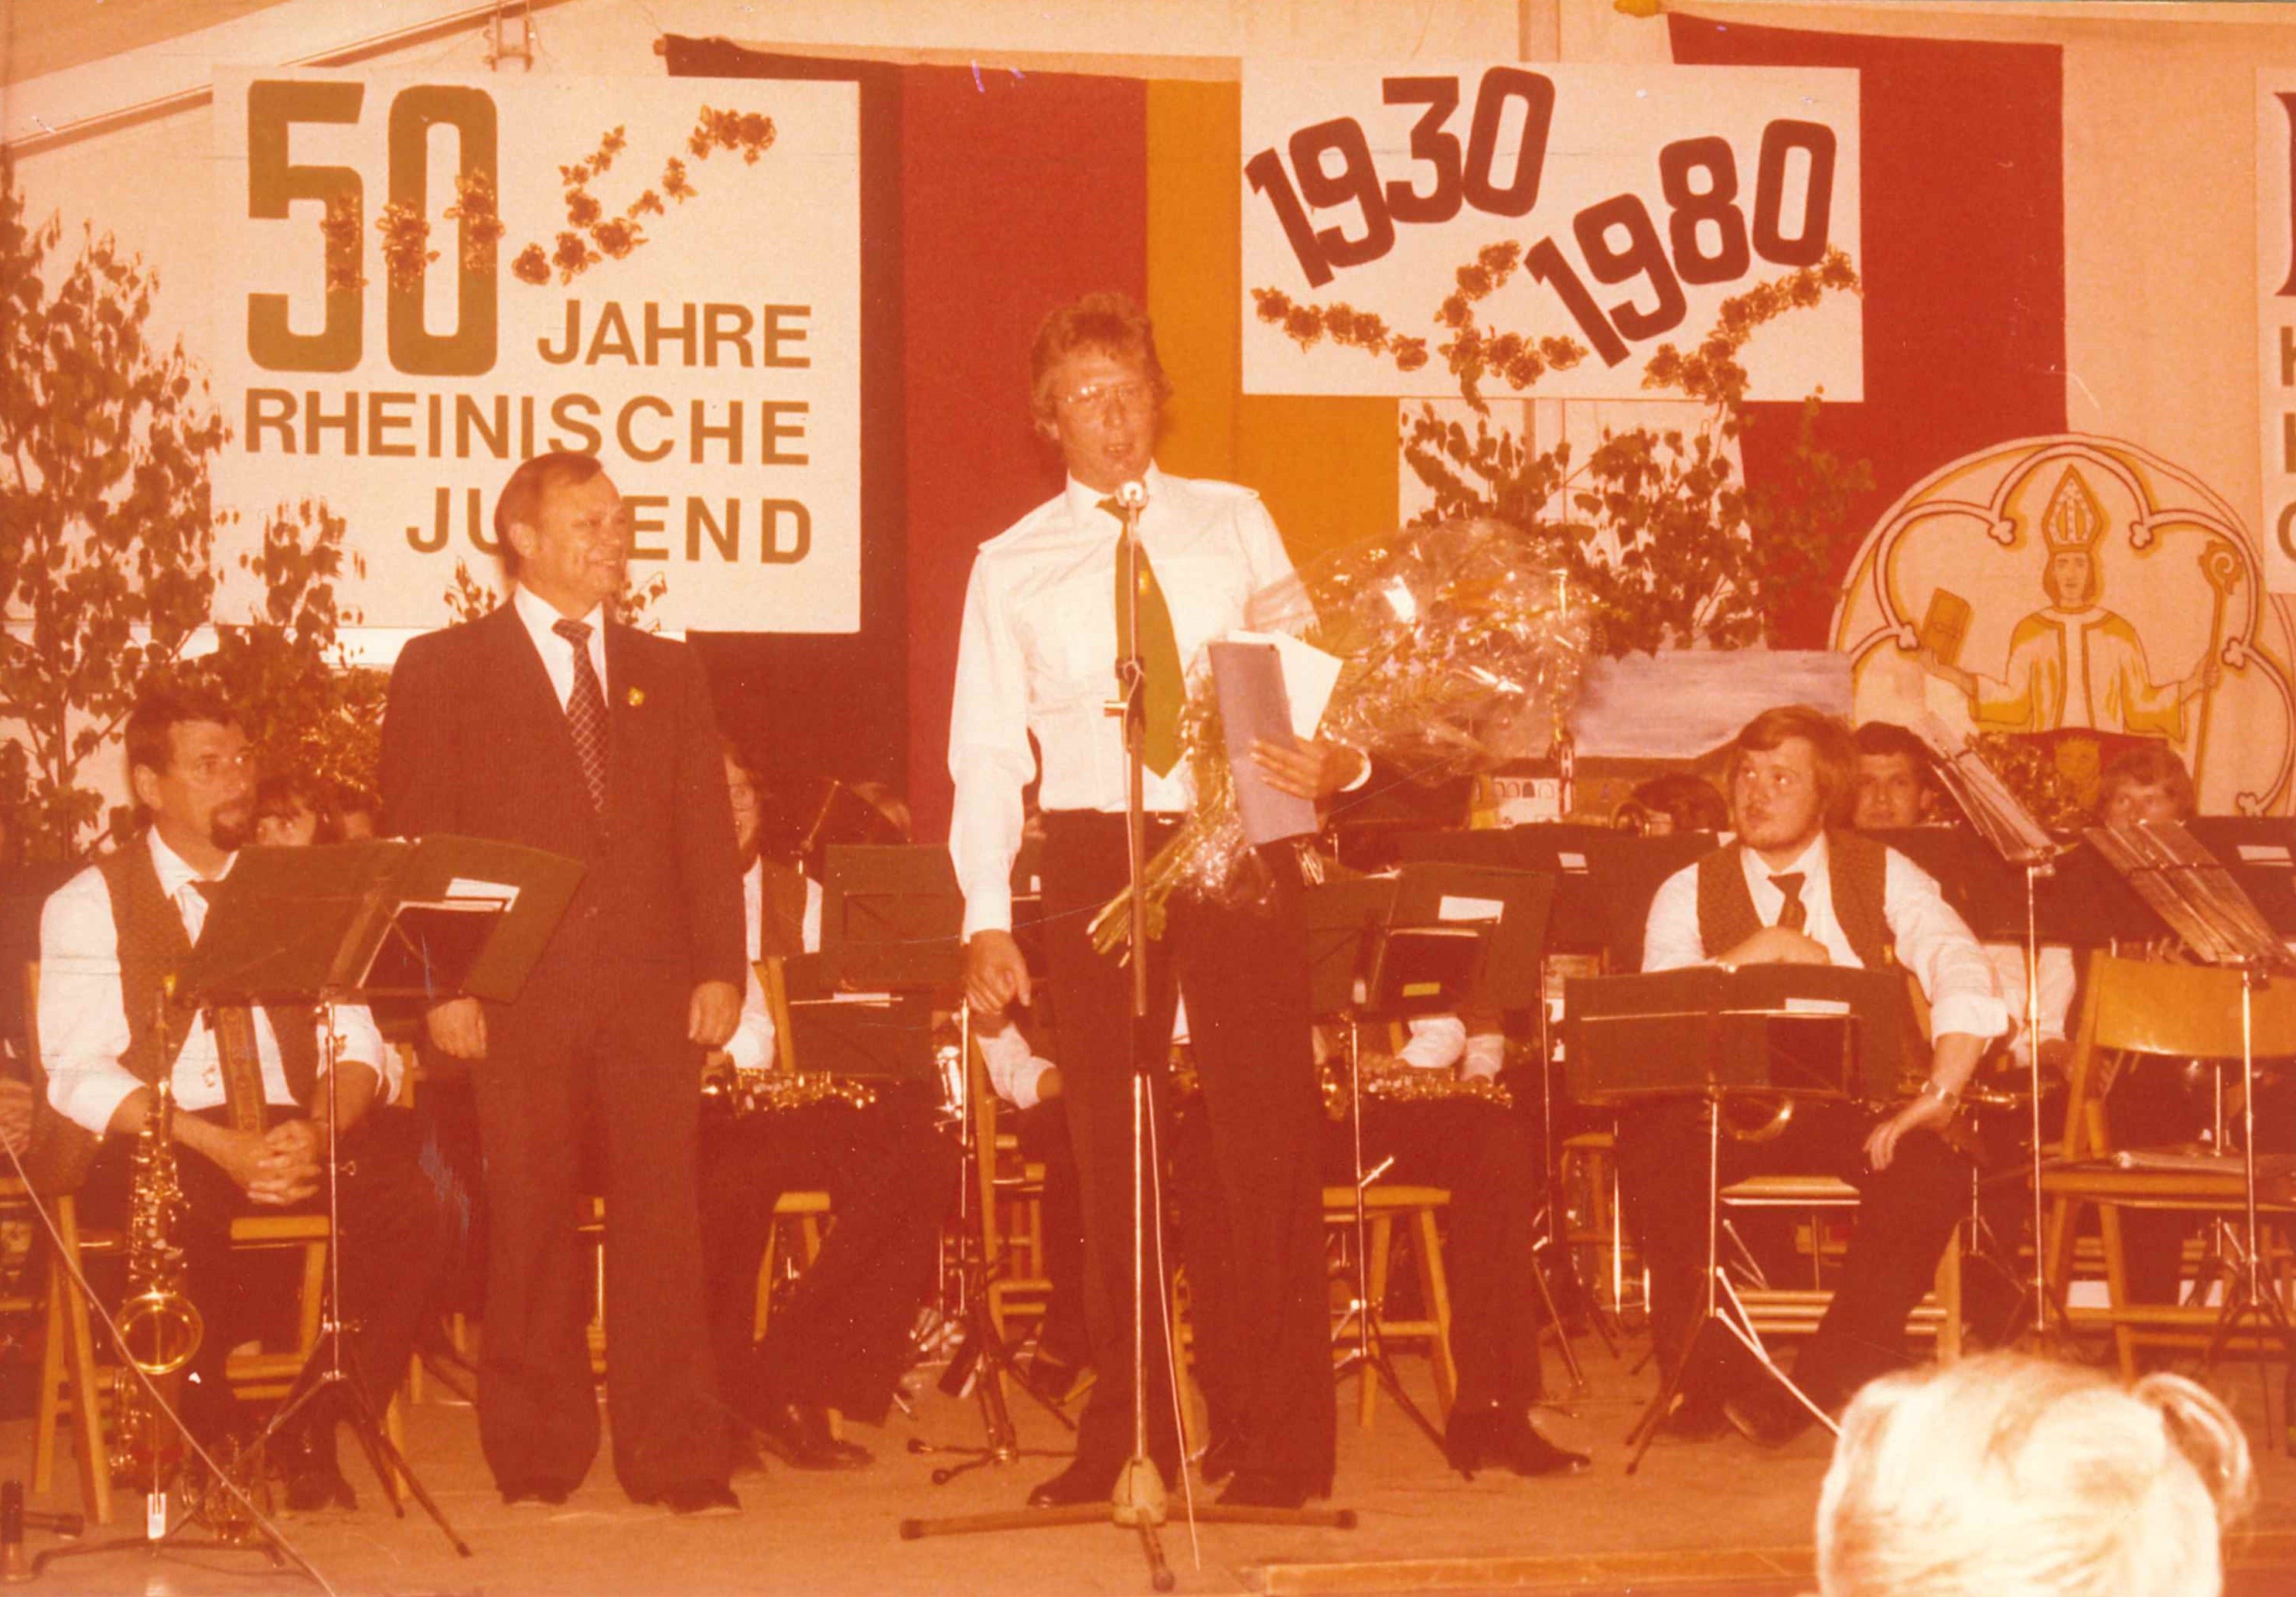 Bürgermeister Trennheuser, 50 Jahre Rheinische Jugend, 1980 (REM CC BY-NC-SA)